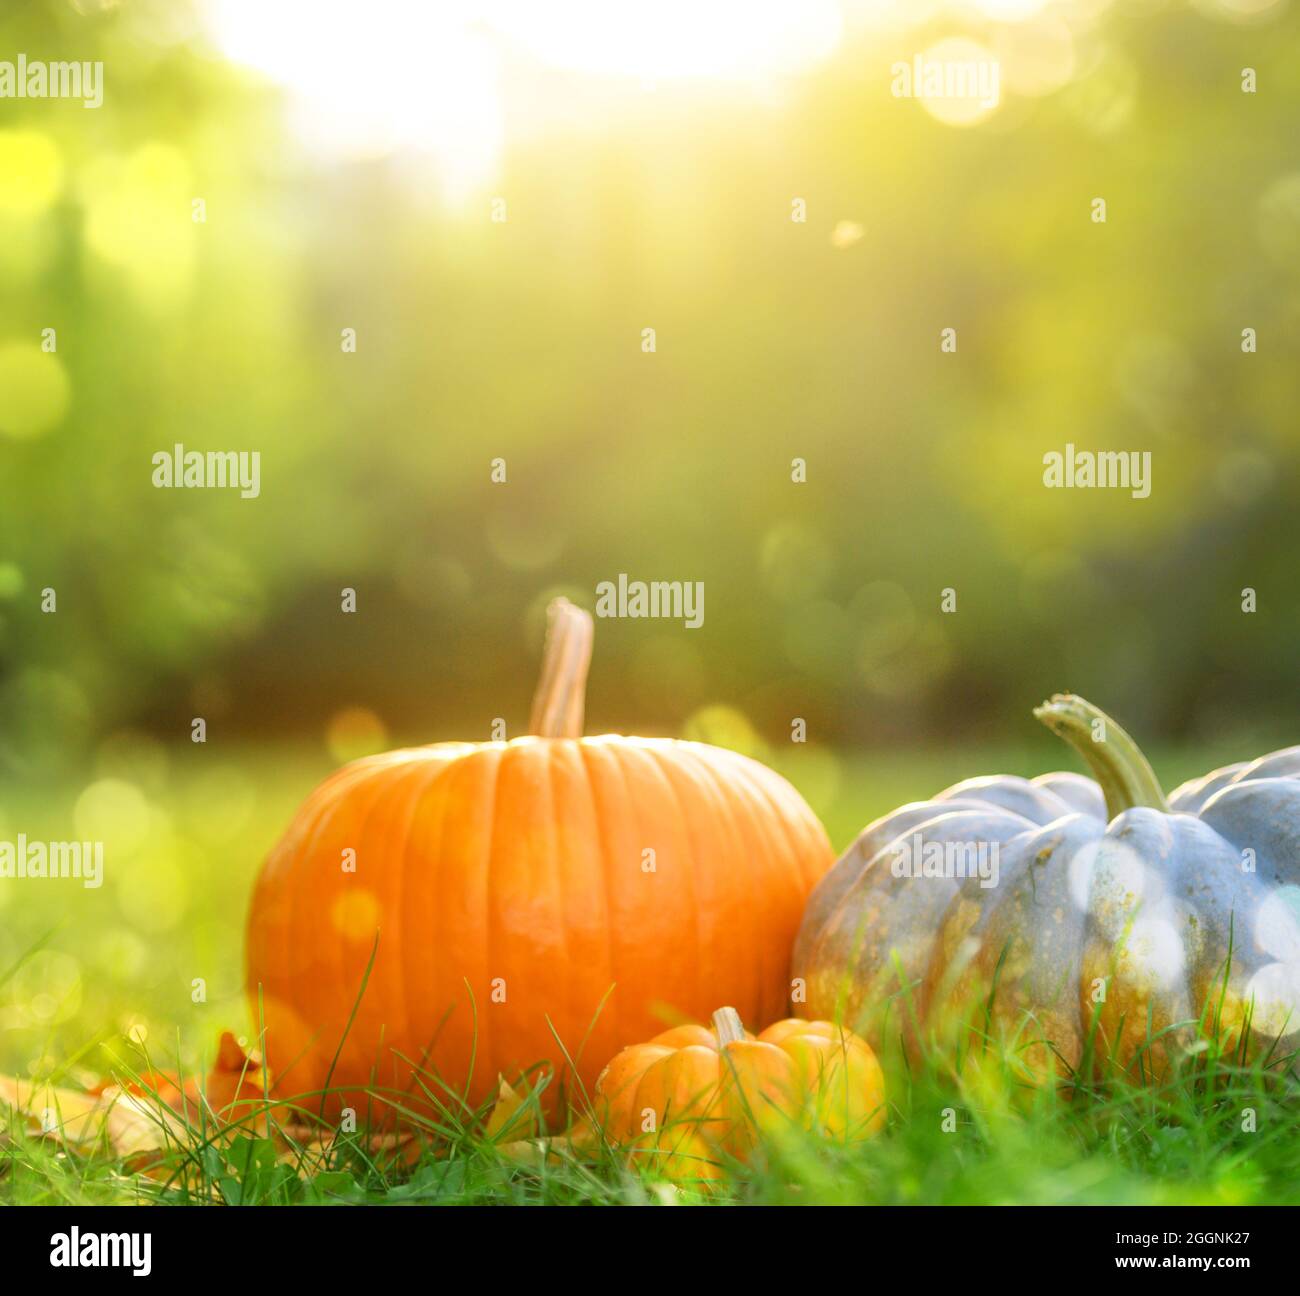 Kürbisse auf grünem Gras Hintergrund, Herbsternte und Danksagekonzept Stockfoto